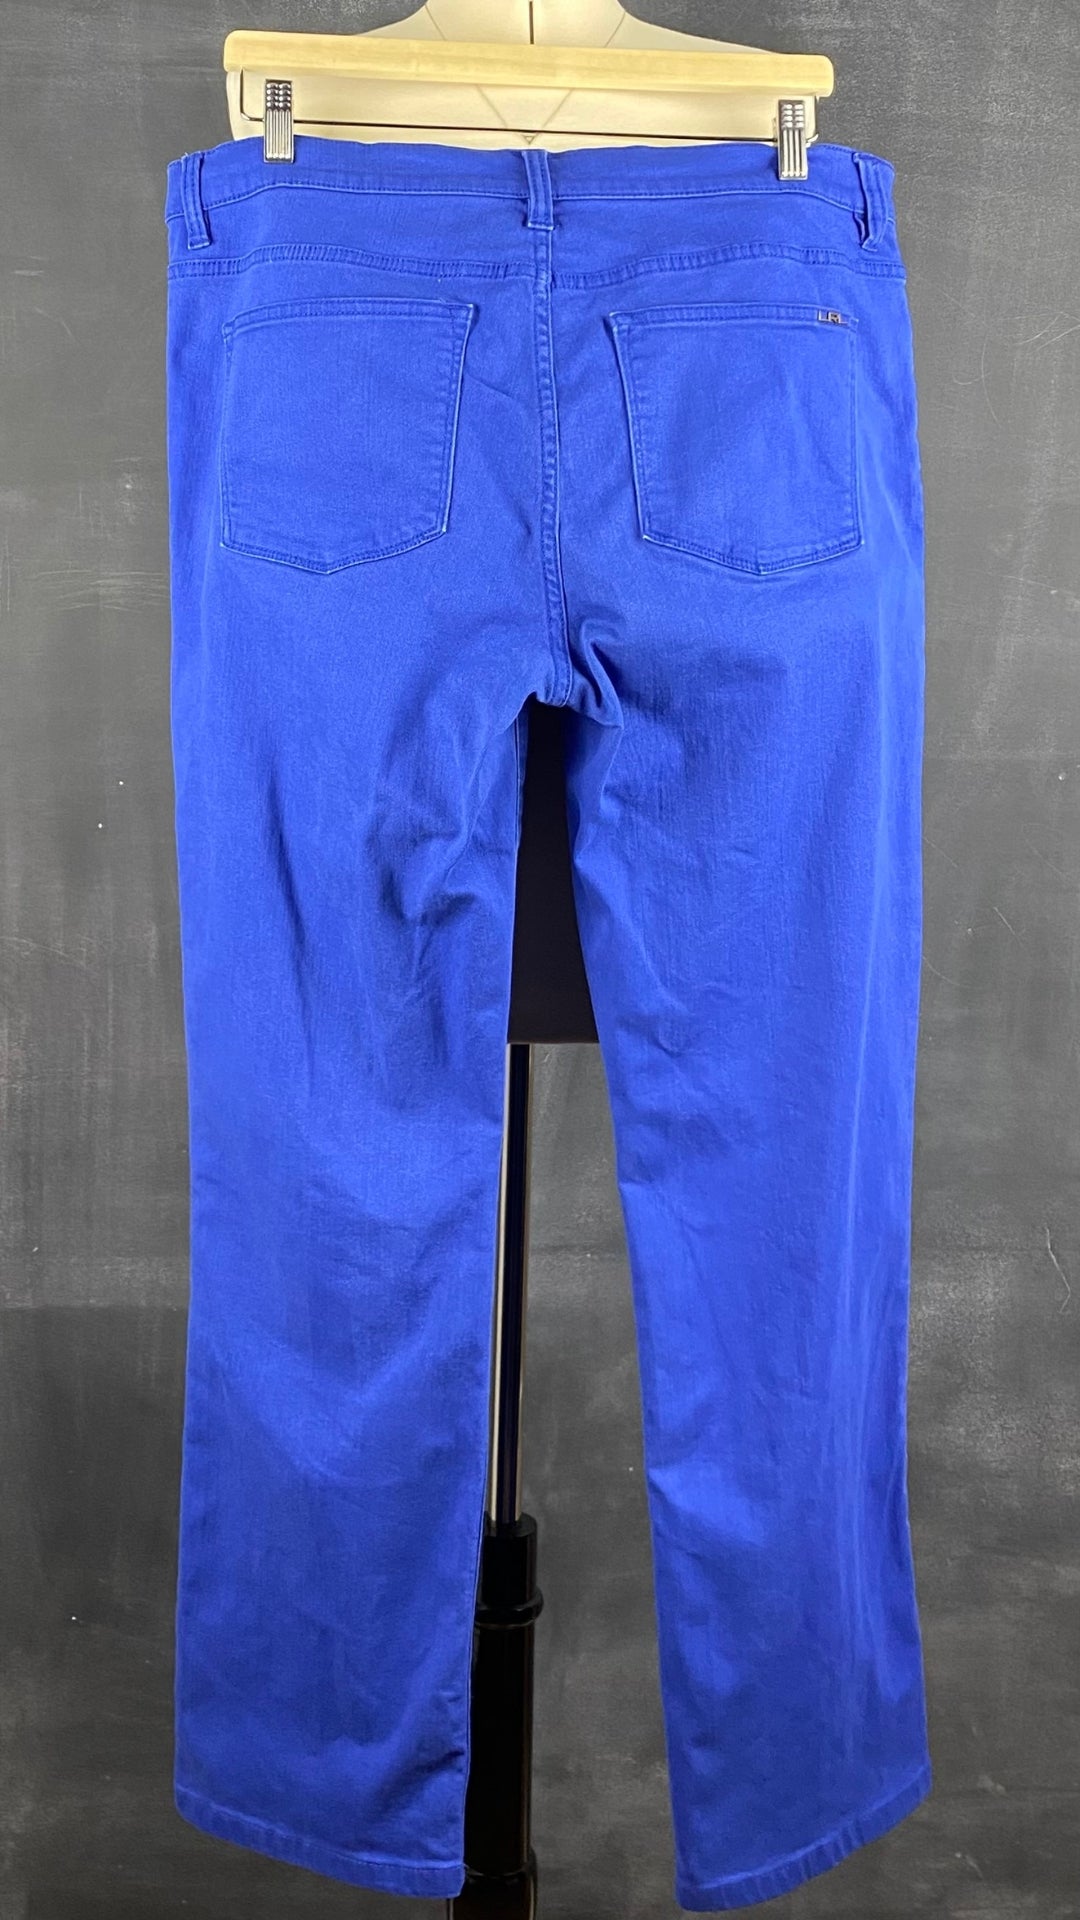 Pantalon en denim bleu royal Lauren Ralph Lauren, taille 14. Vue de dos.